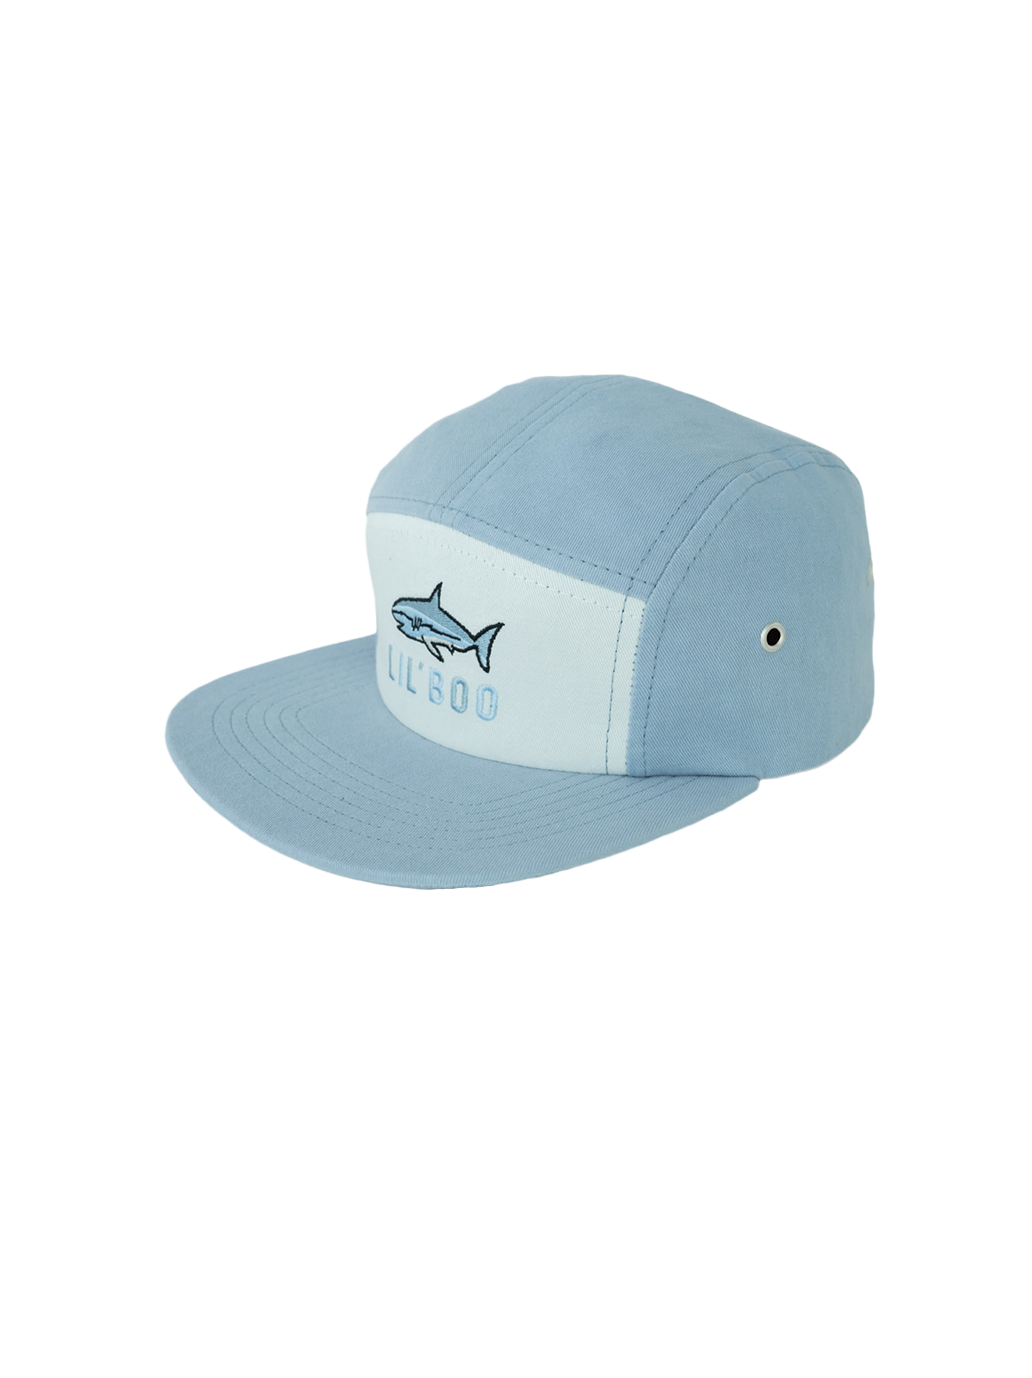 Shark baseball cap